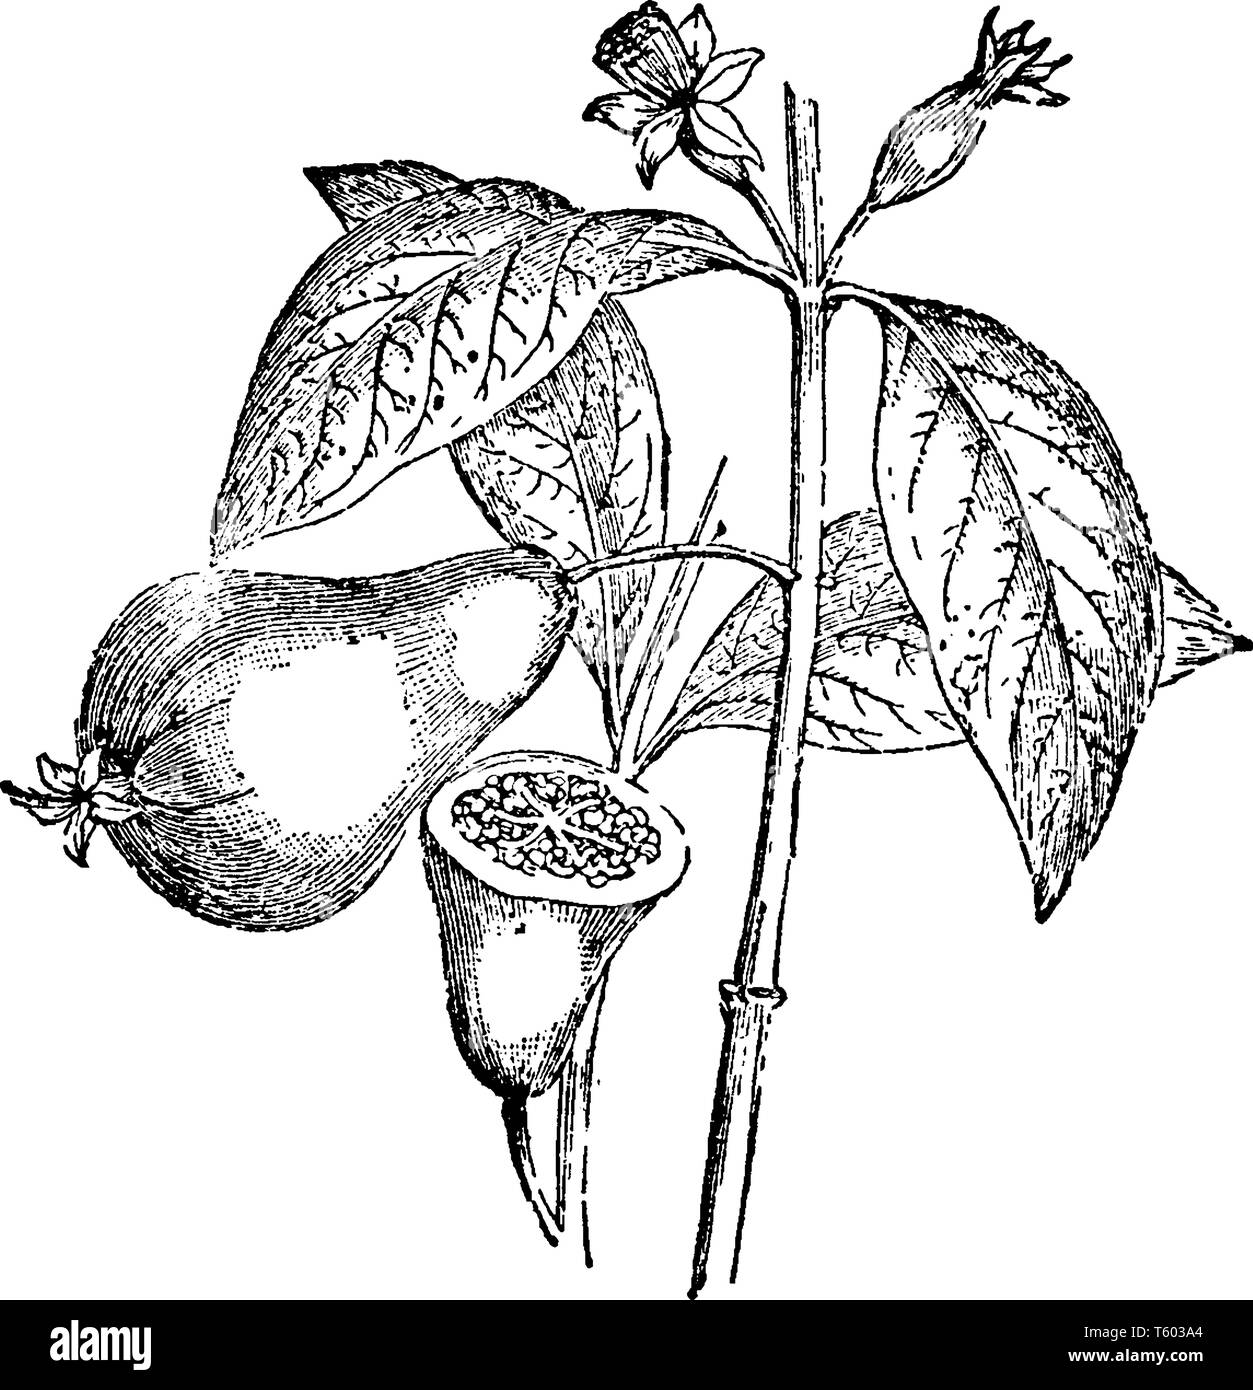 Planta de guayaba Imágenes de stock en blanco y negro - Alamy